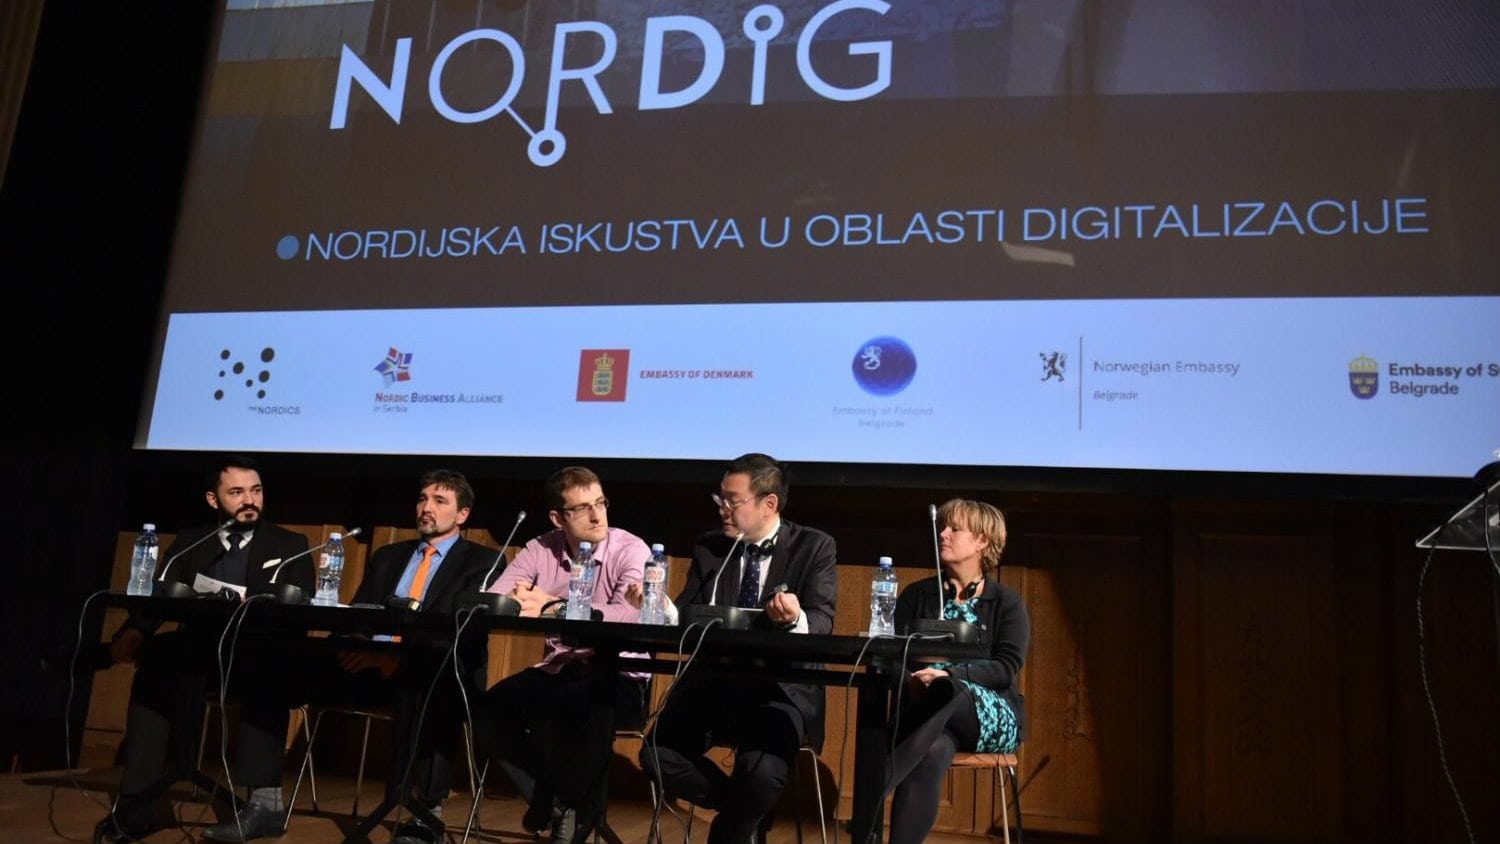 Održan seminar "NorDig - Nordijska iskustva u oblasti digitalizacije" 1